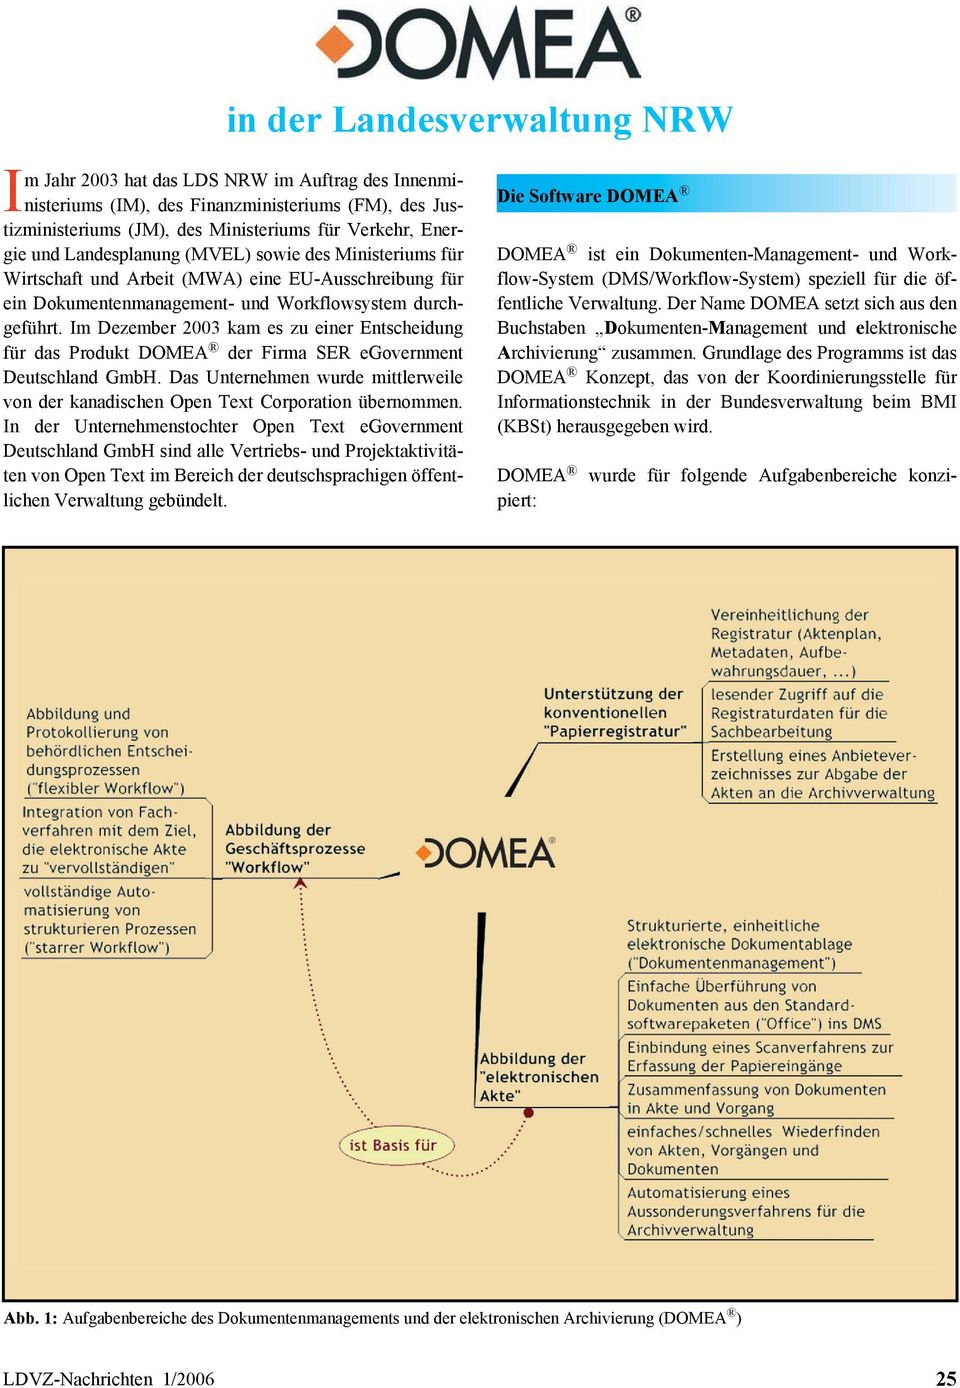 Im Dezember 2003 kam es zu einer Entscheidung für das Produkt DOMEA der Firma SER egovernment Deutschland GmbH. Das Unternehmen wurde mittlerweile von der kanadischen Open Text Corporation übernommen.